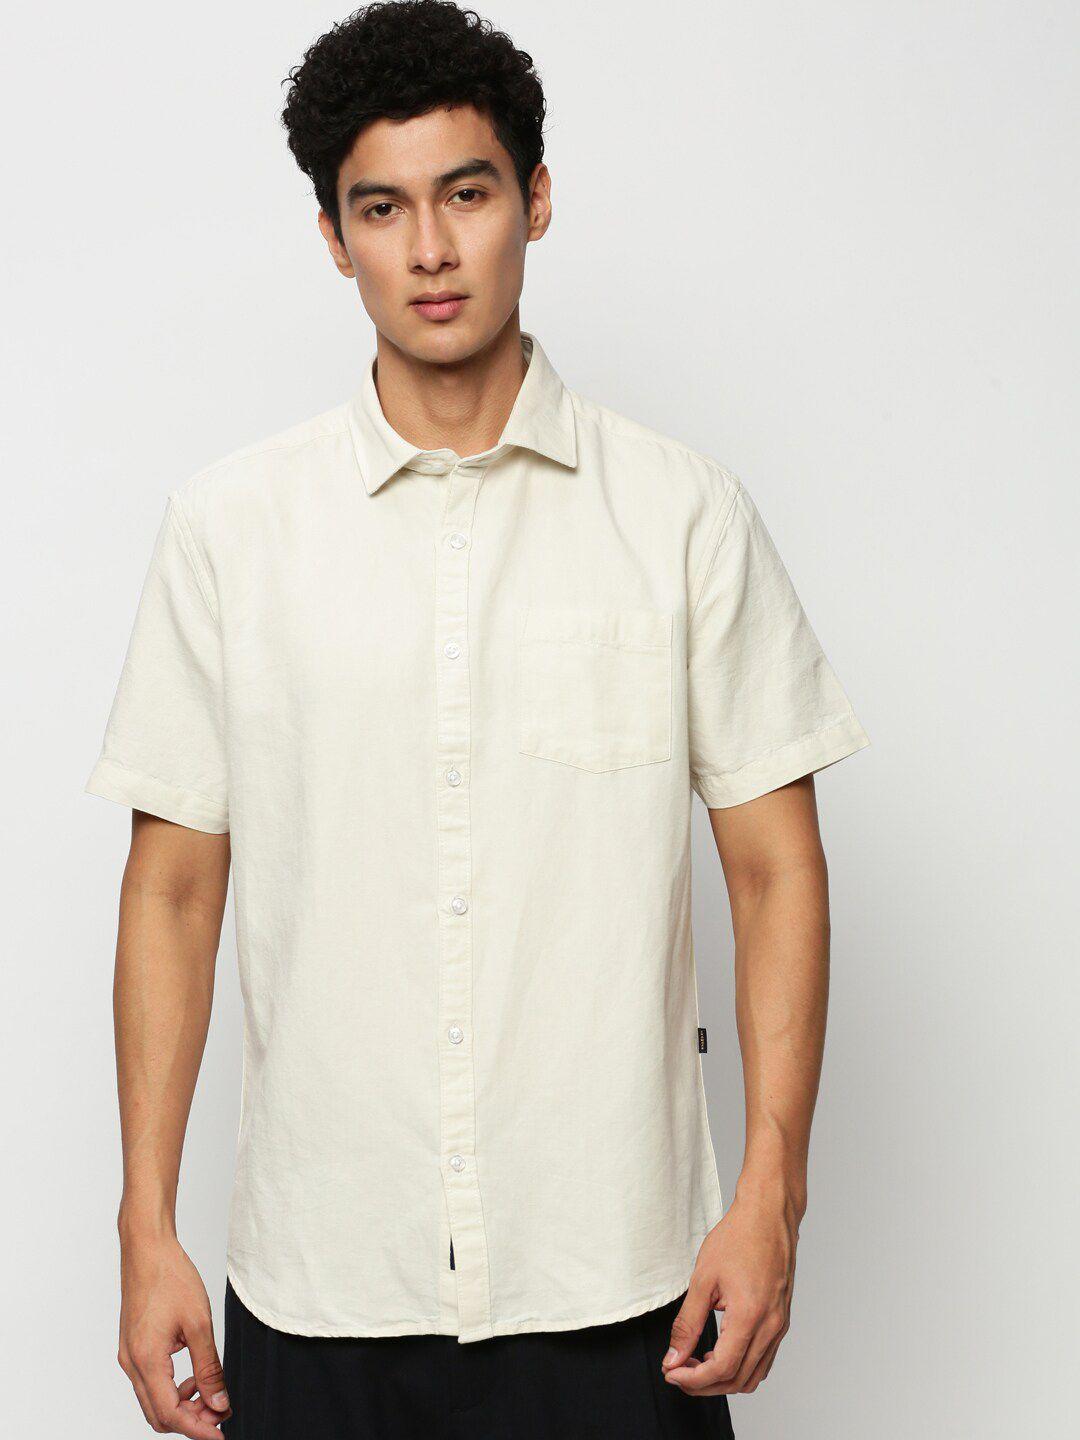 showoff premium slim fit oxford weave cotton linen casual shirt